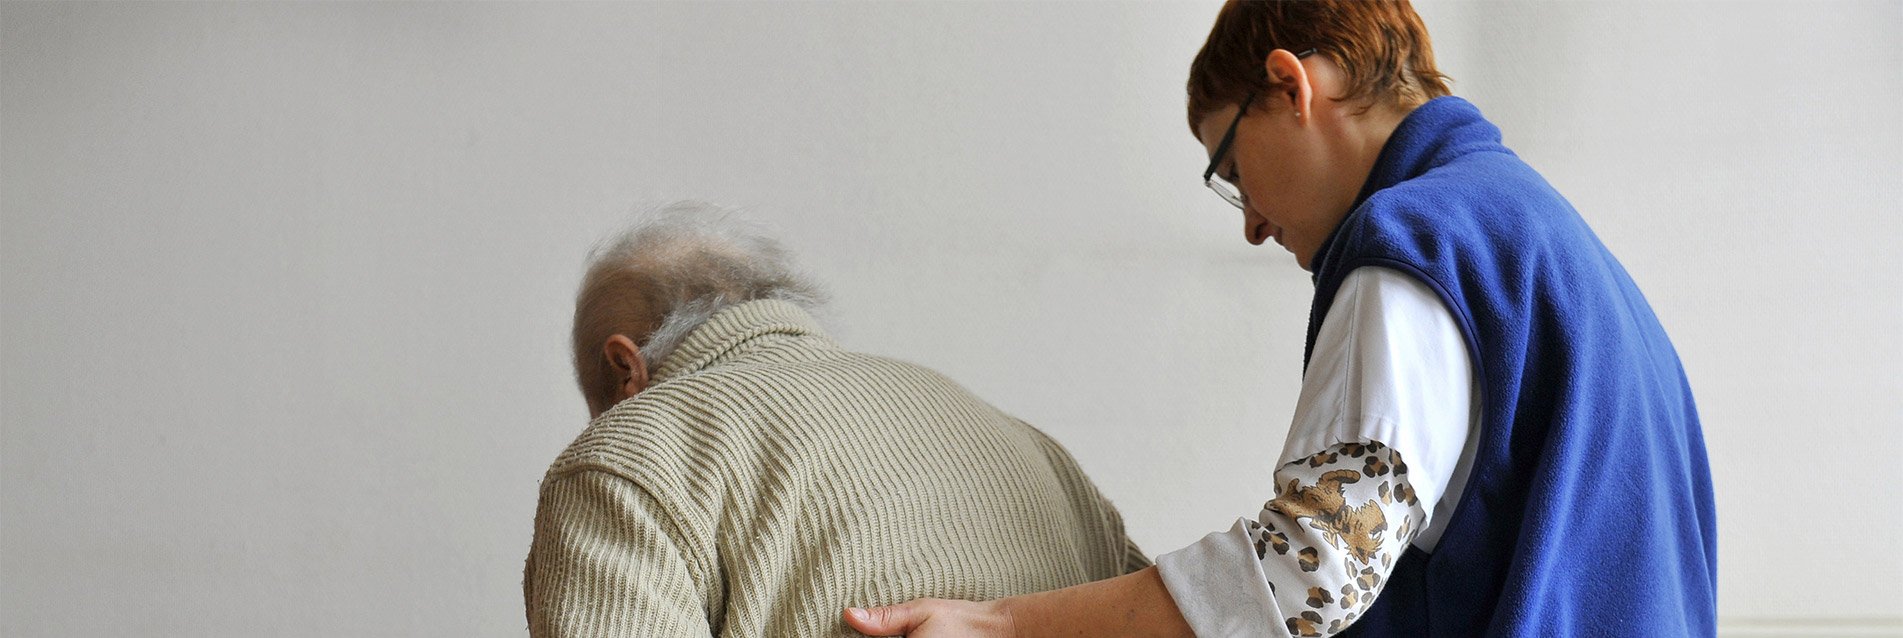 Pour favoriser le maintien des personnes âgées à domicile, « Lien de vie » aide les aidants